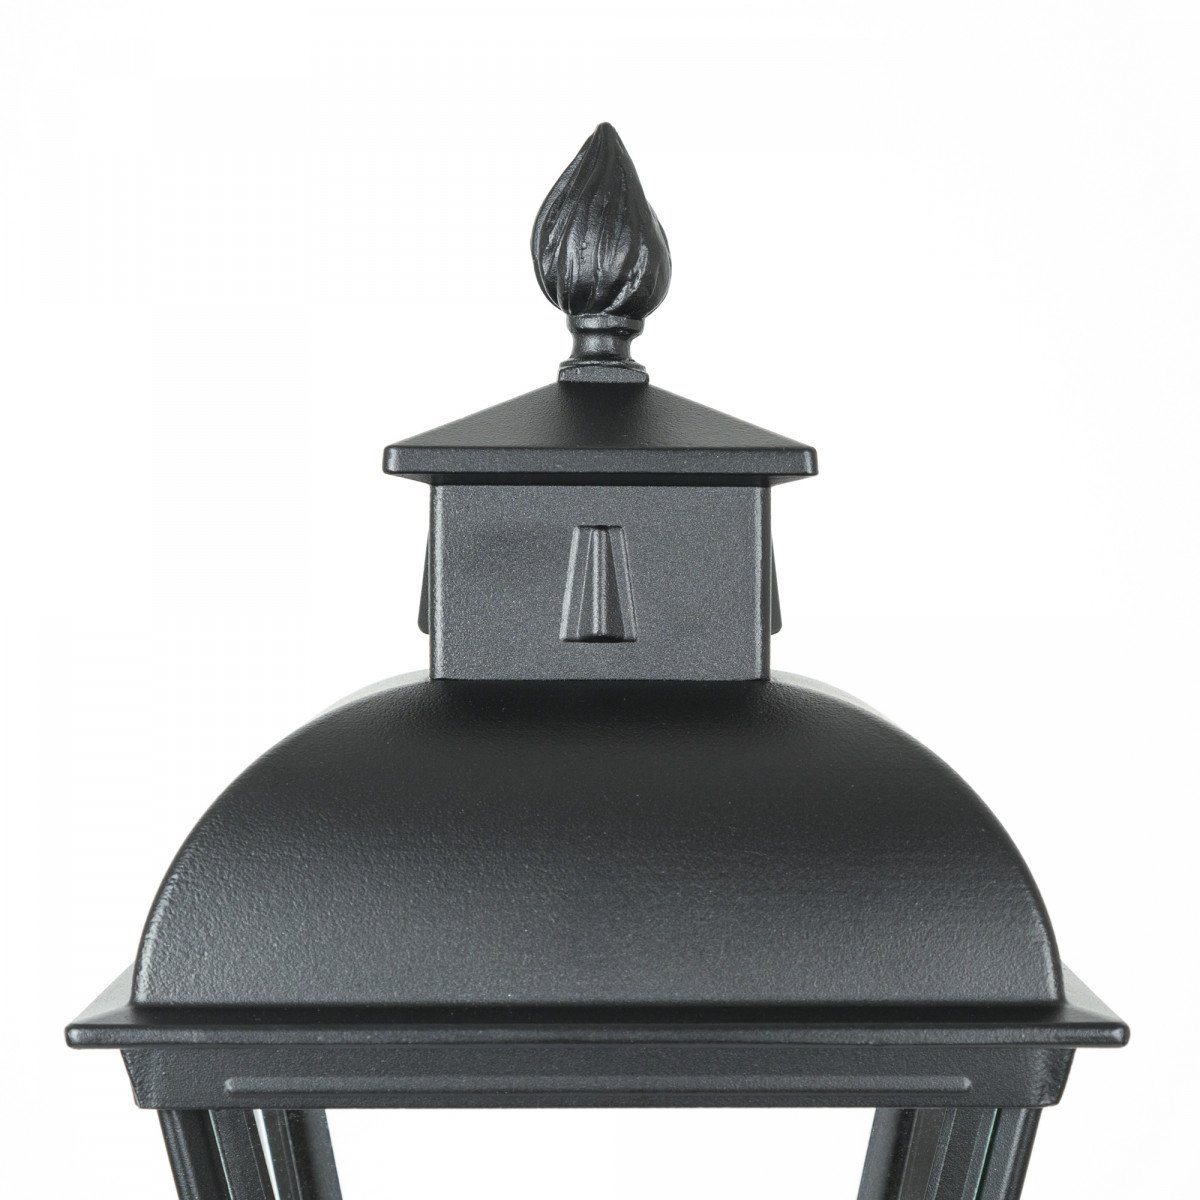 Klassieke lantaarnkap Vondel in vierkante vorm en sierlijke details uitgevoerd in zwarte kleur